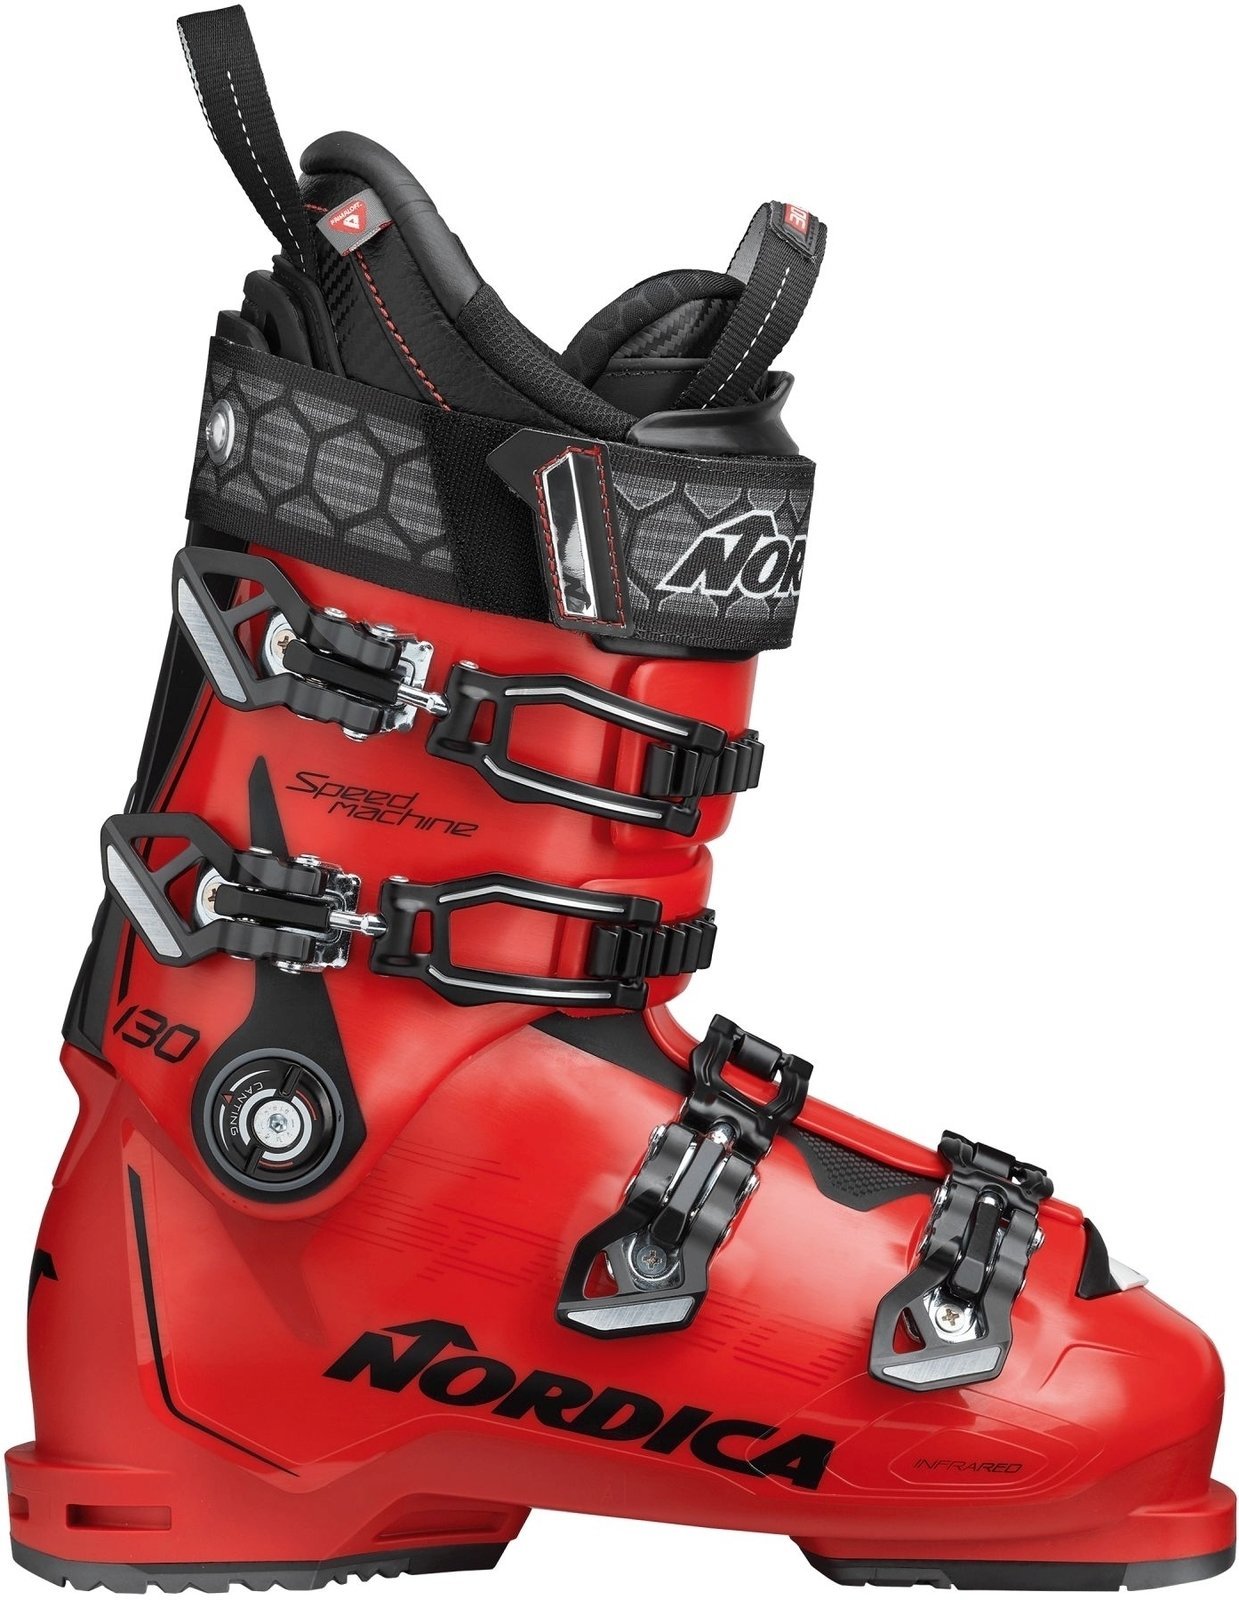 Alpine Ski Boots Nordica Speedmachine Red-Black 275 Alpine Ski Boots